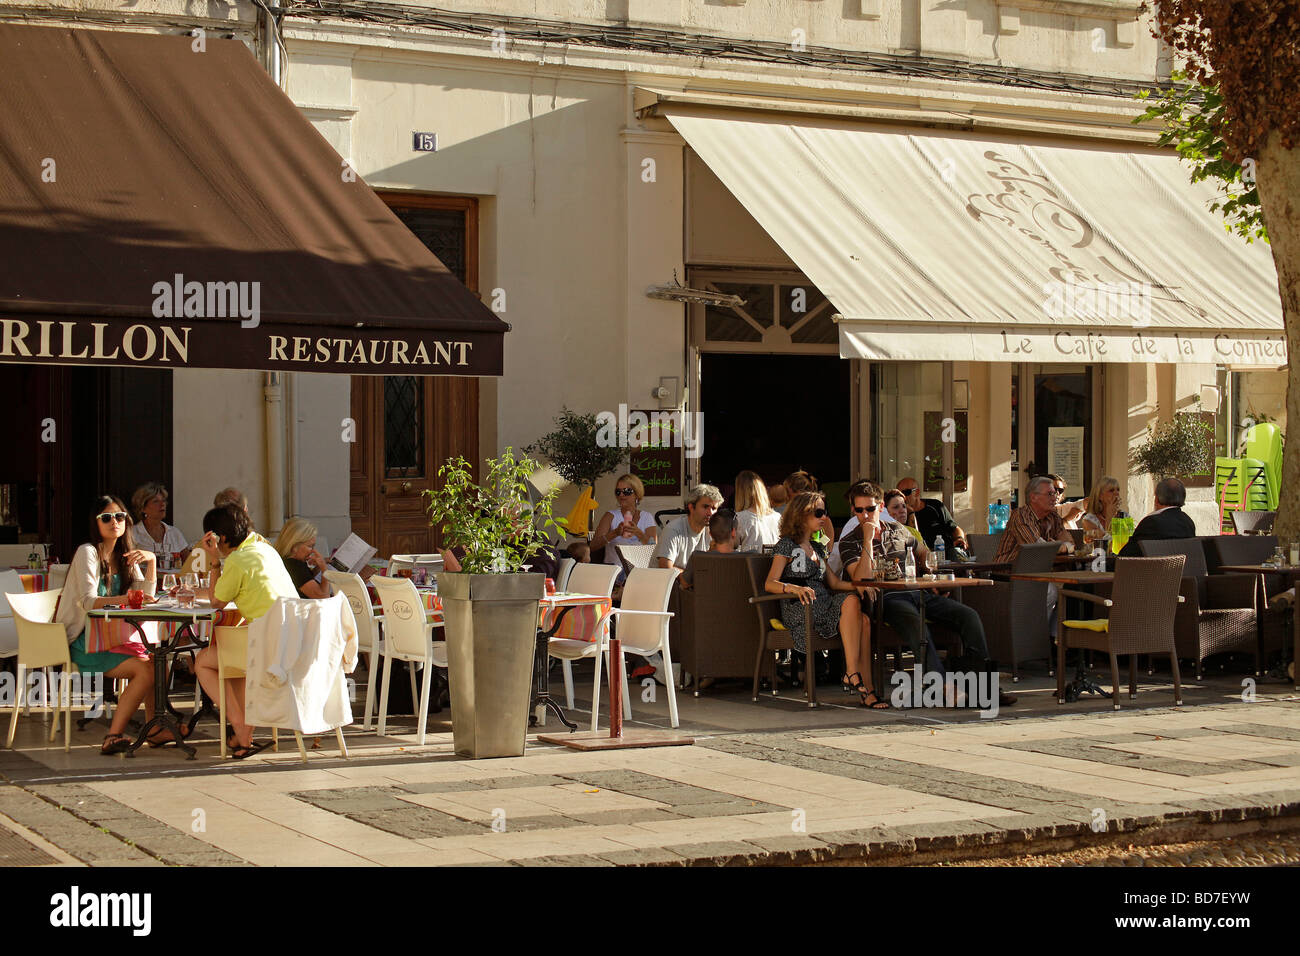 Street Café de la comedia y restaurante en Avignon Provence Francia Europa Foto de stock